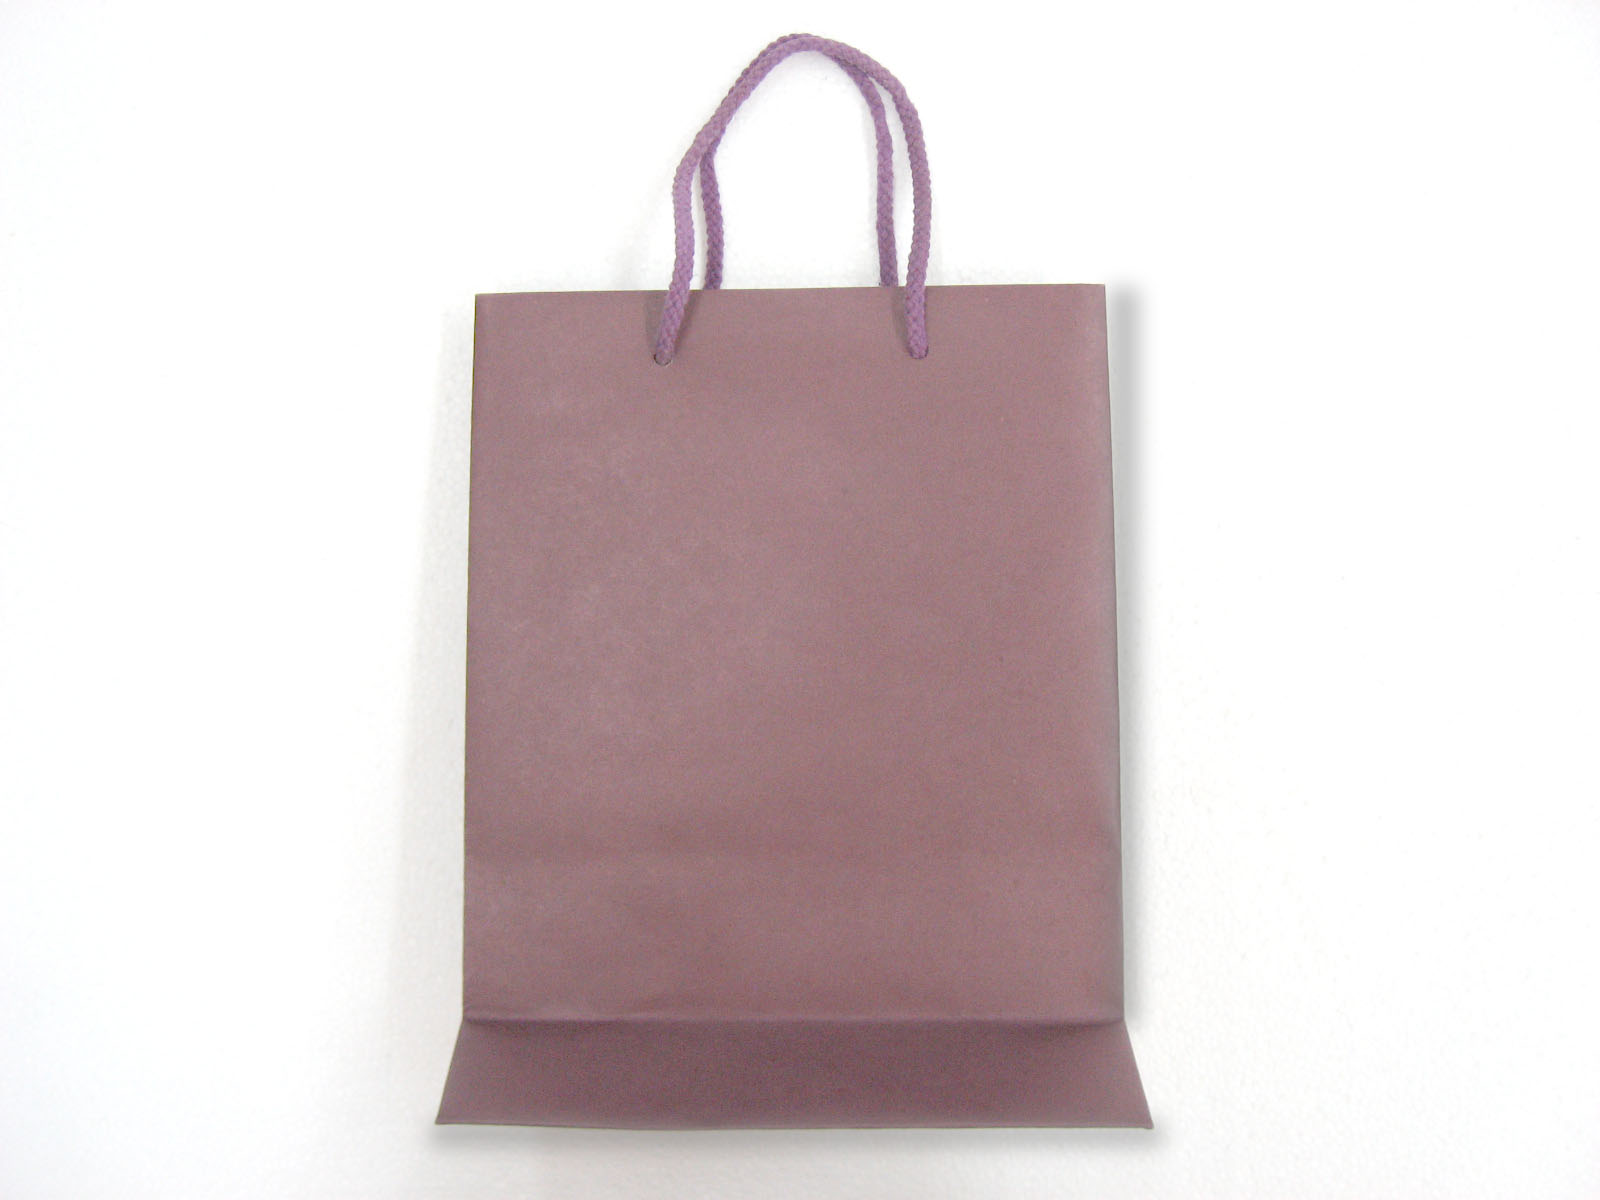 手挽紙袋8+4X11"紫色 1個